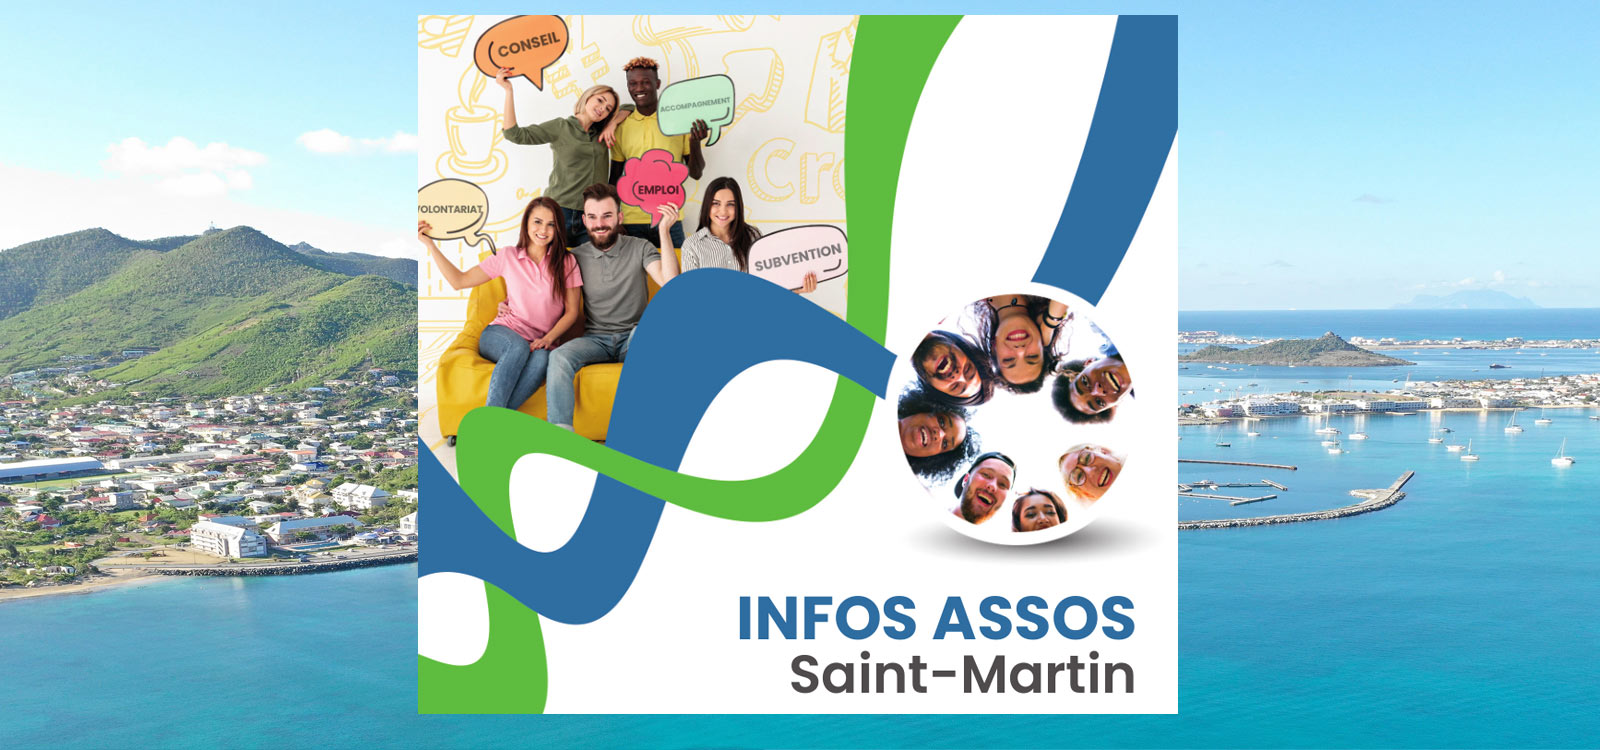 INFOS ASSOS Saint-Martin